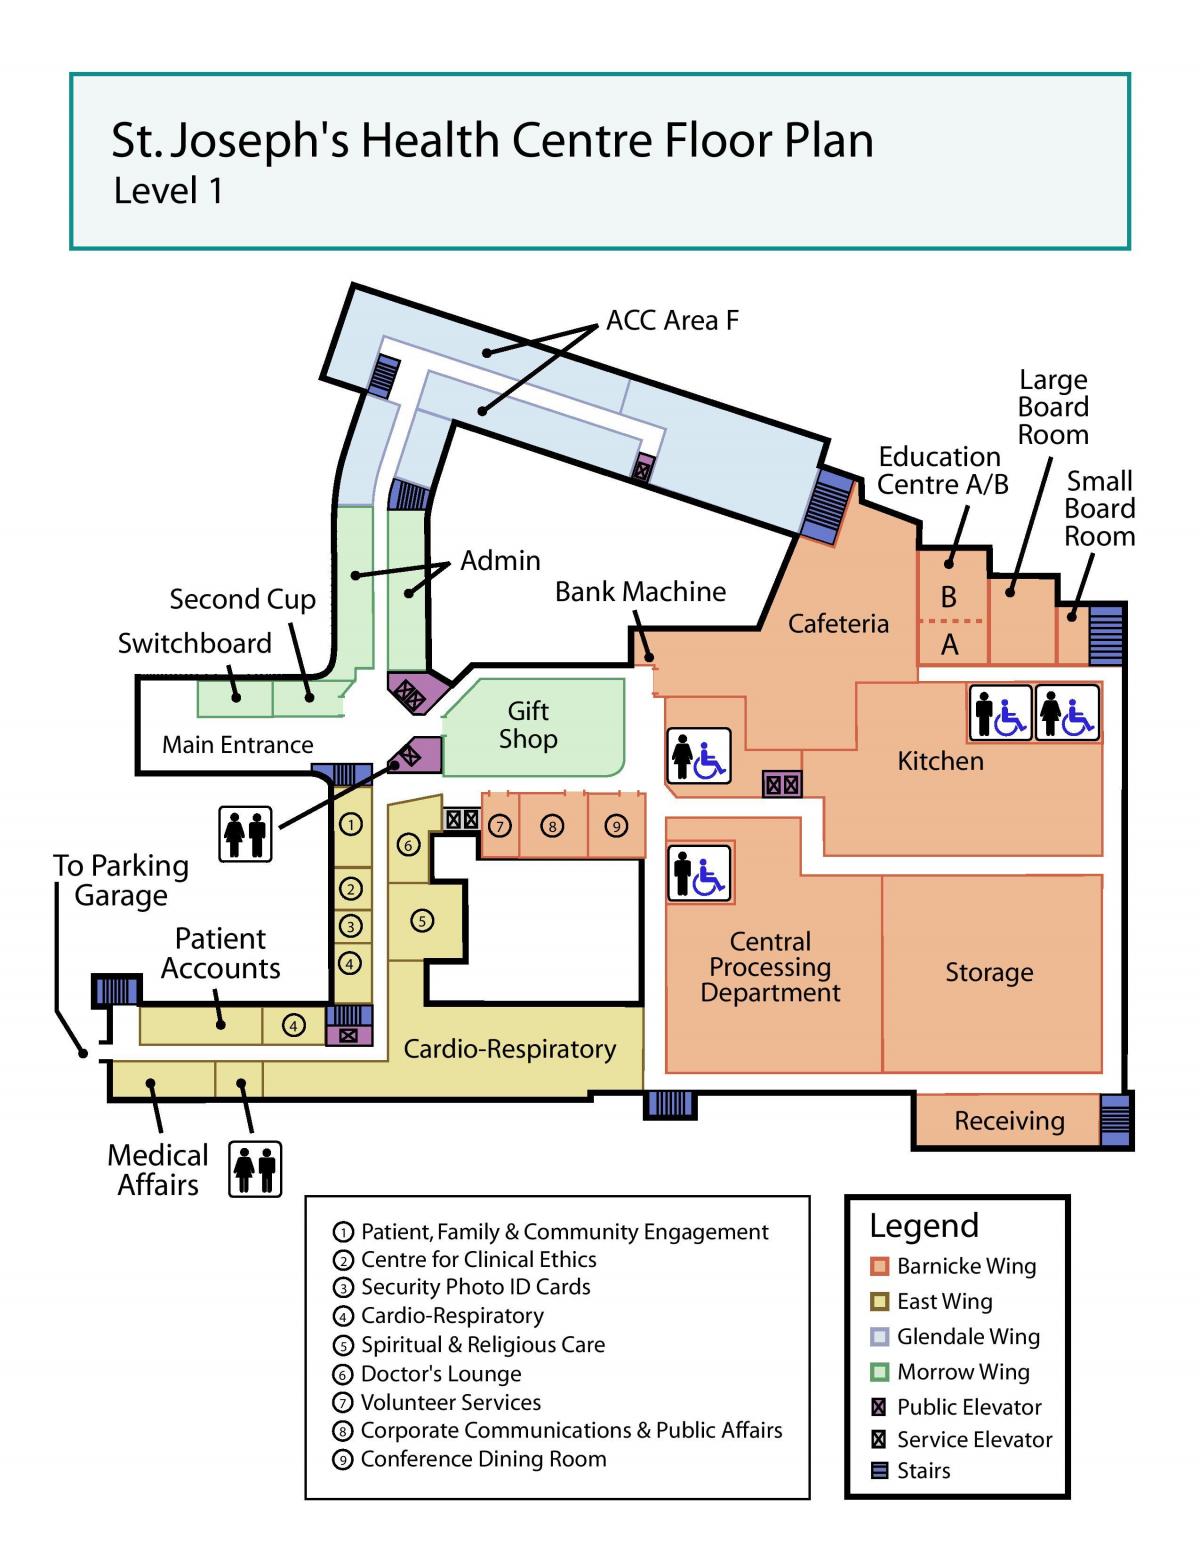 Картицу медицинском центру Светог Јосипа у Торонту 1